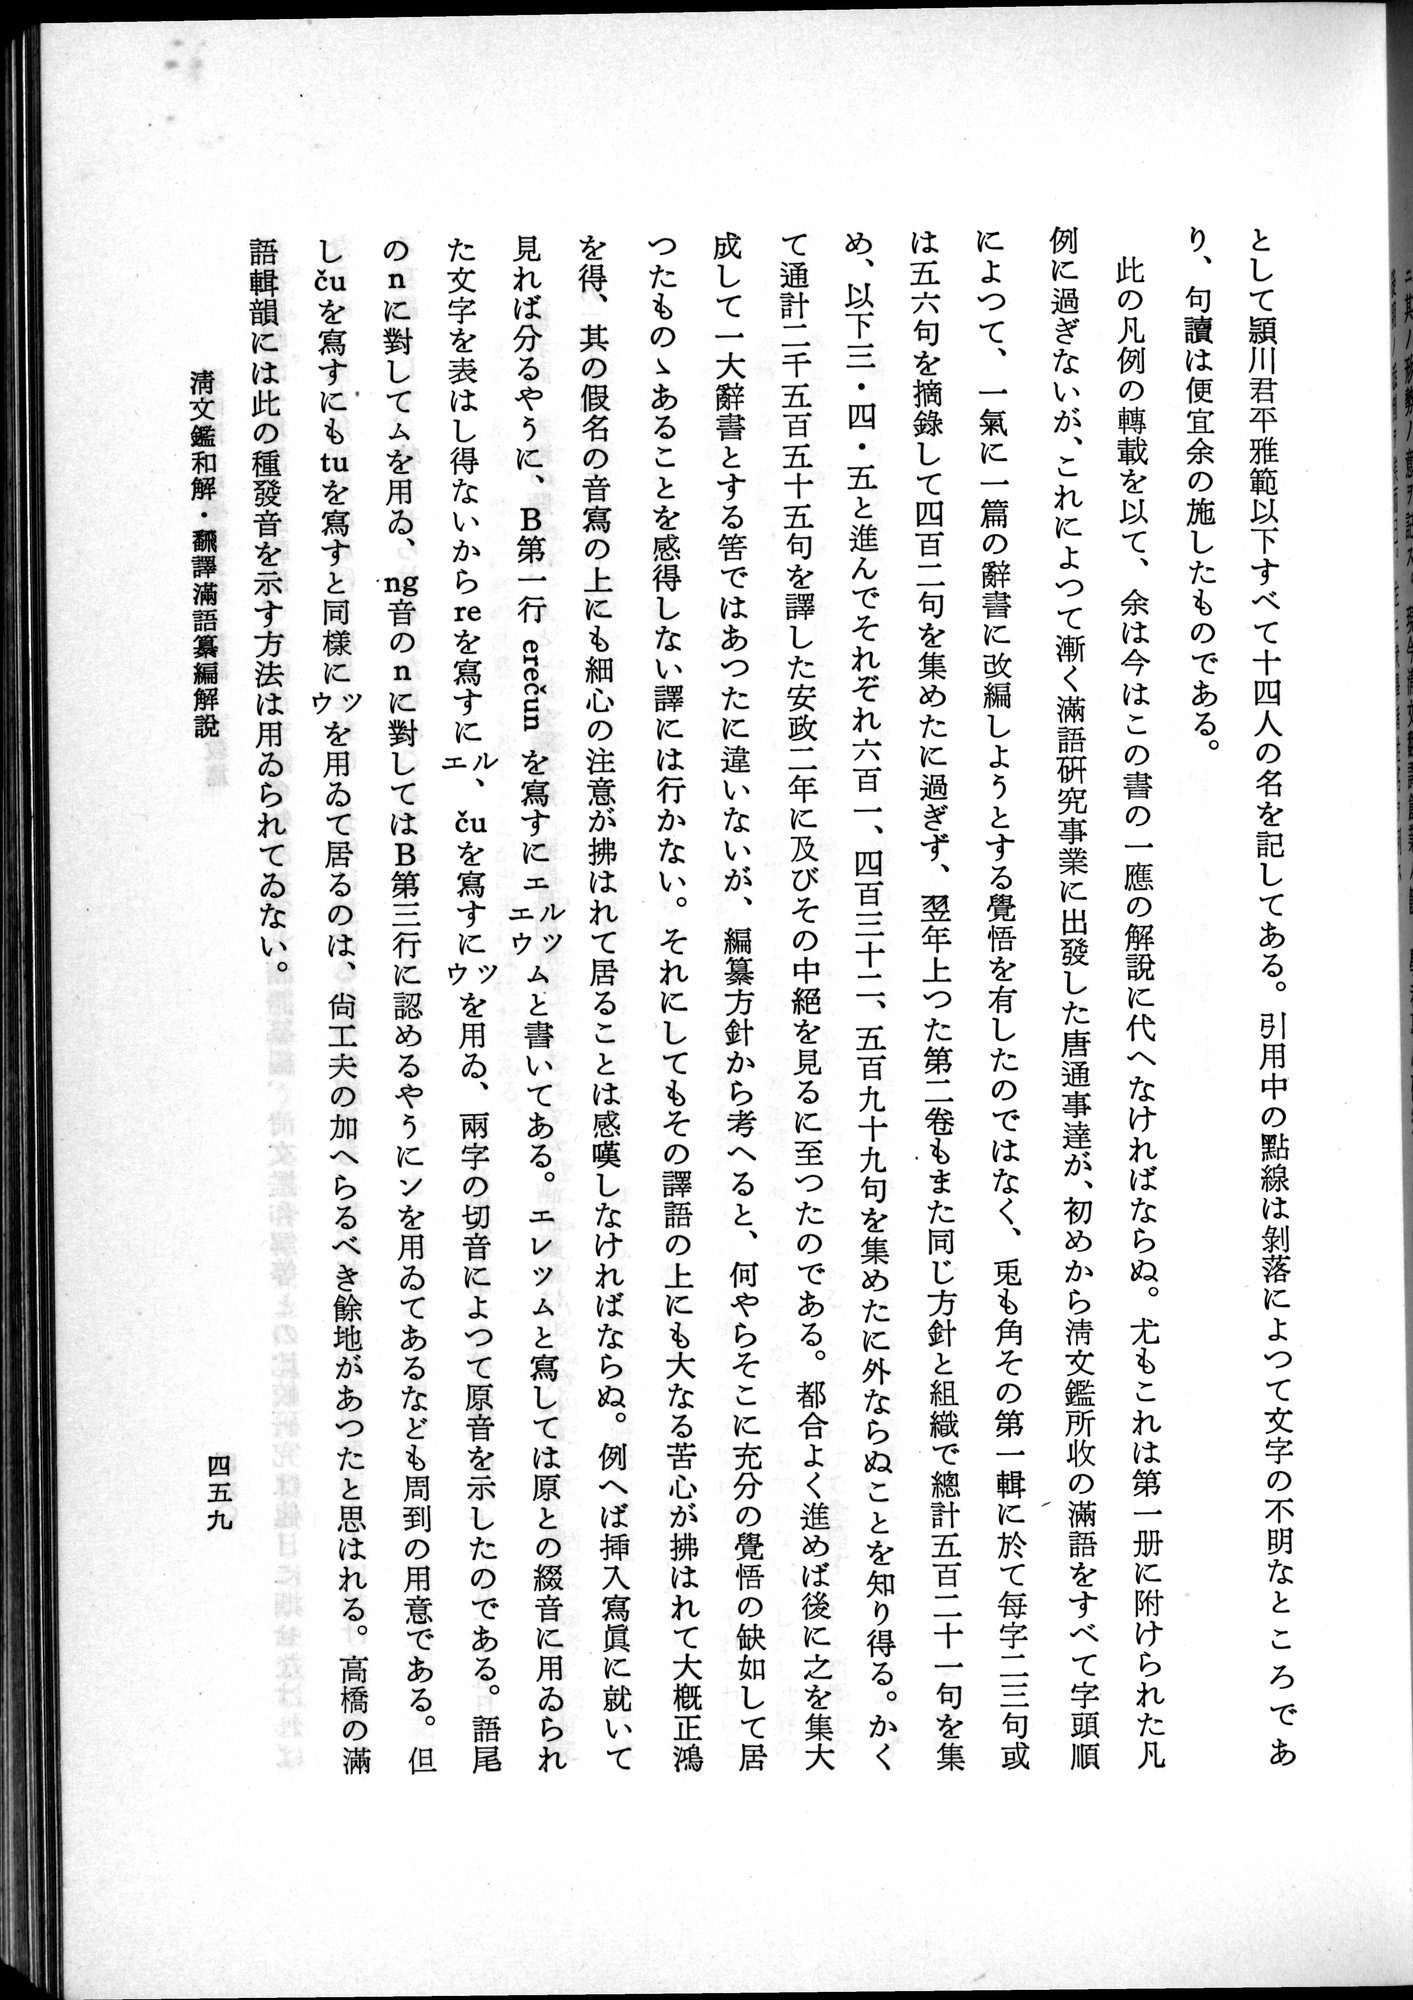 羽田博士史学論文集 : vol.2 / Page 521 (Grayscale High Resolution Image)